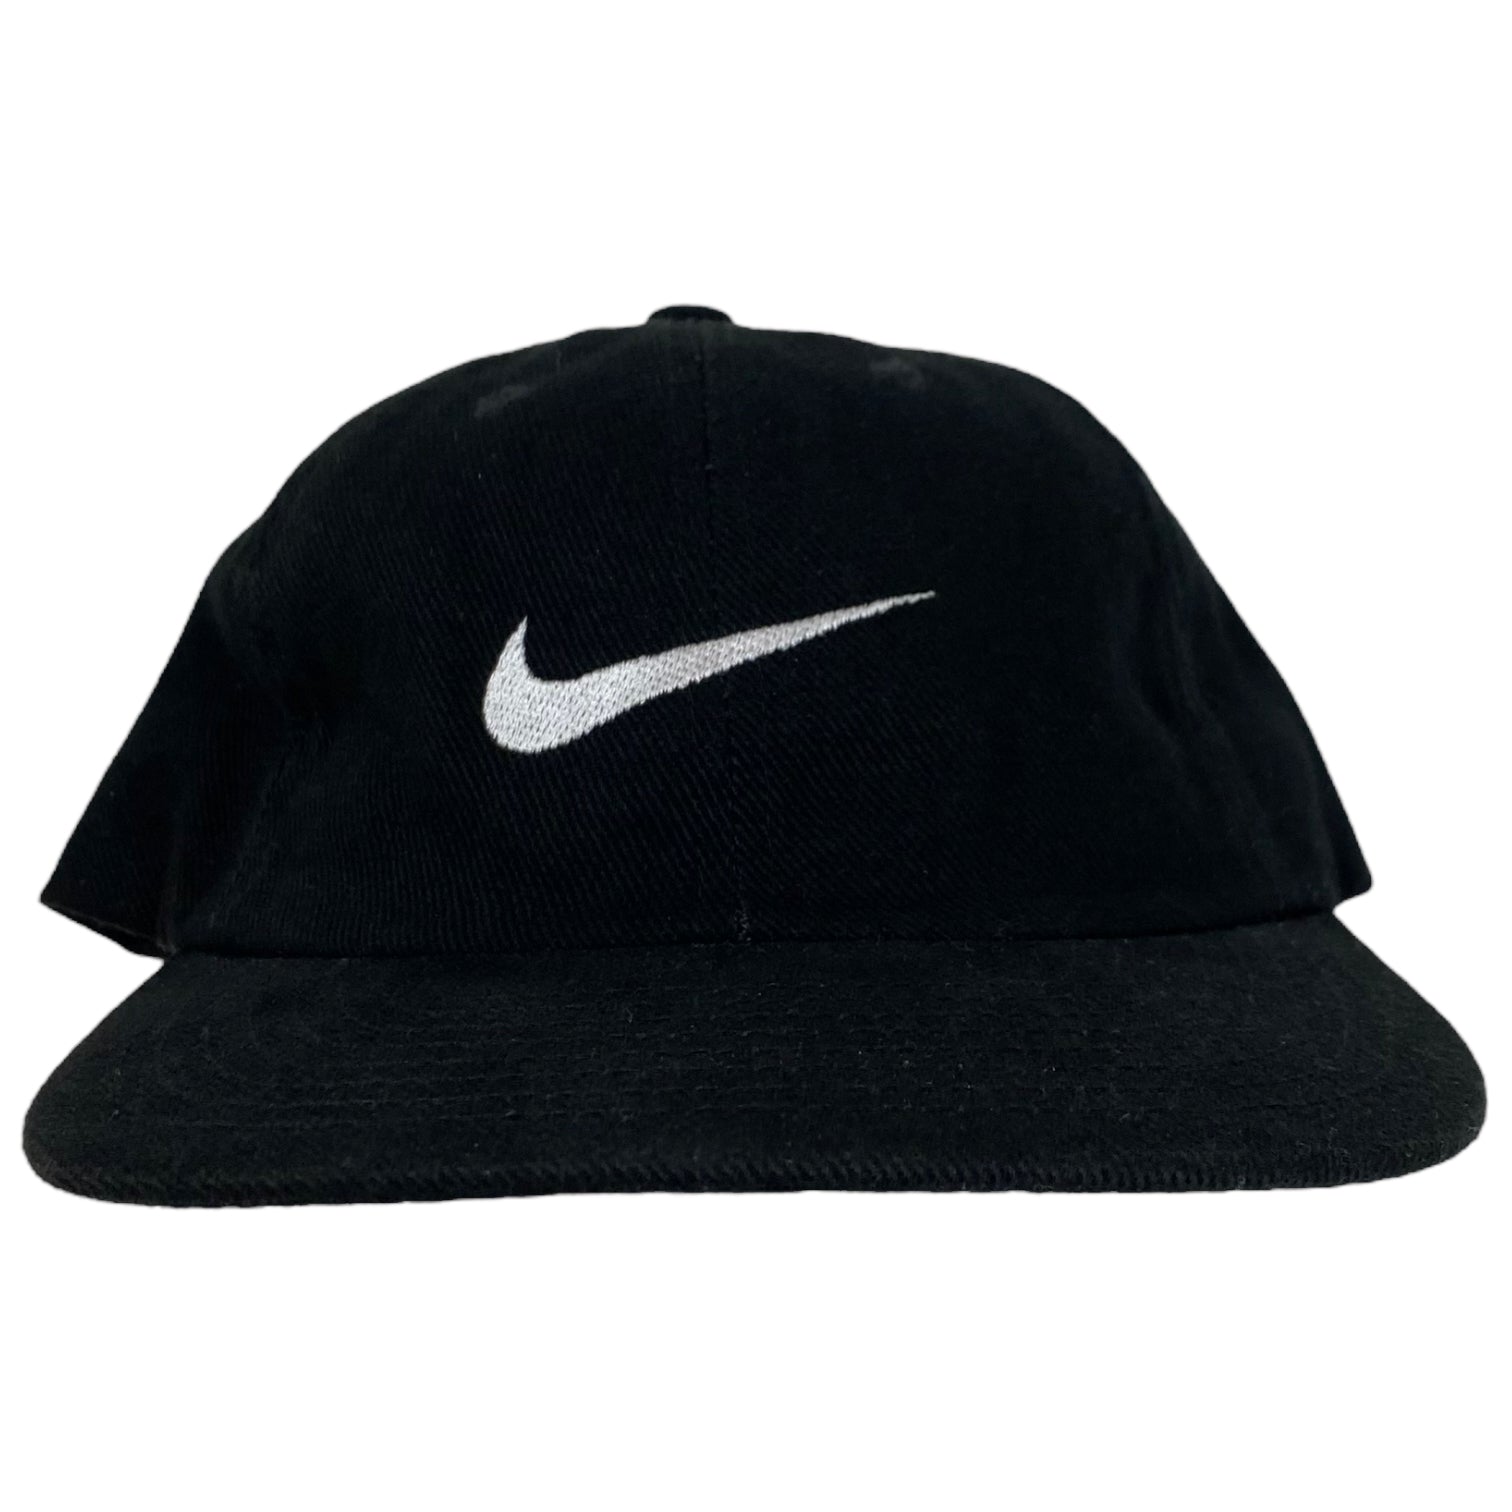 Vintage Nike Swoosh Strapback Hat Black